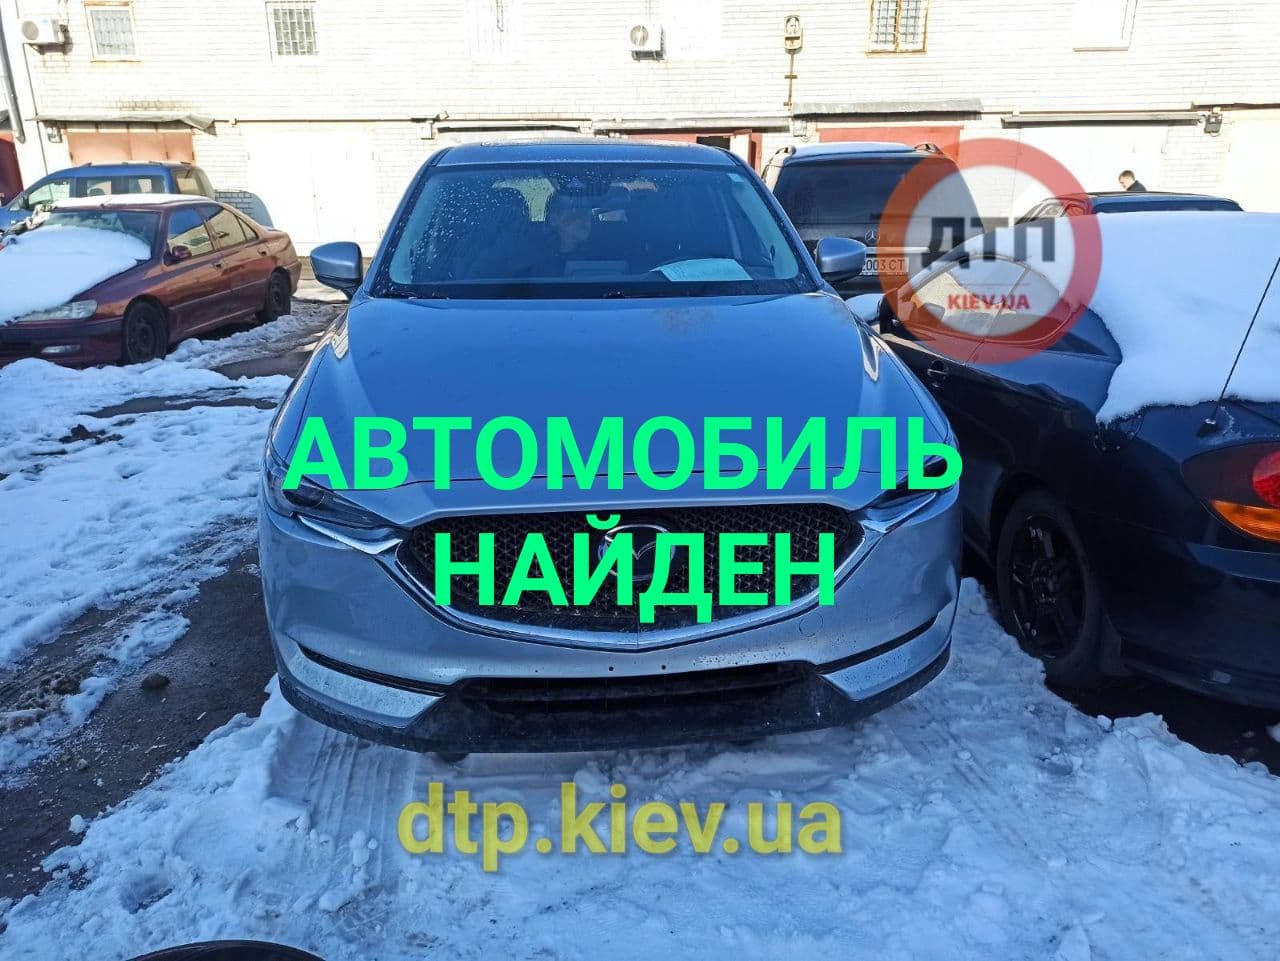 Угнанный ранее в Киеве автомобиль Мазда найден